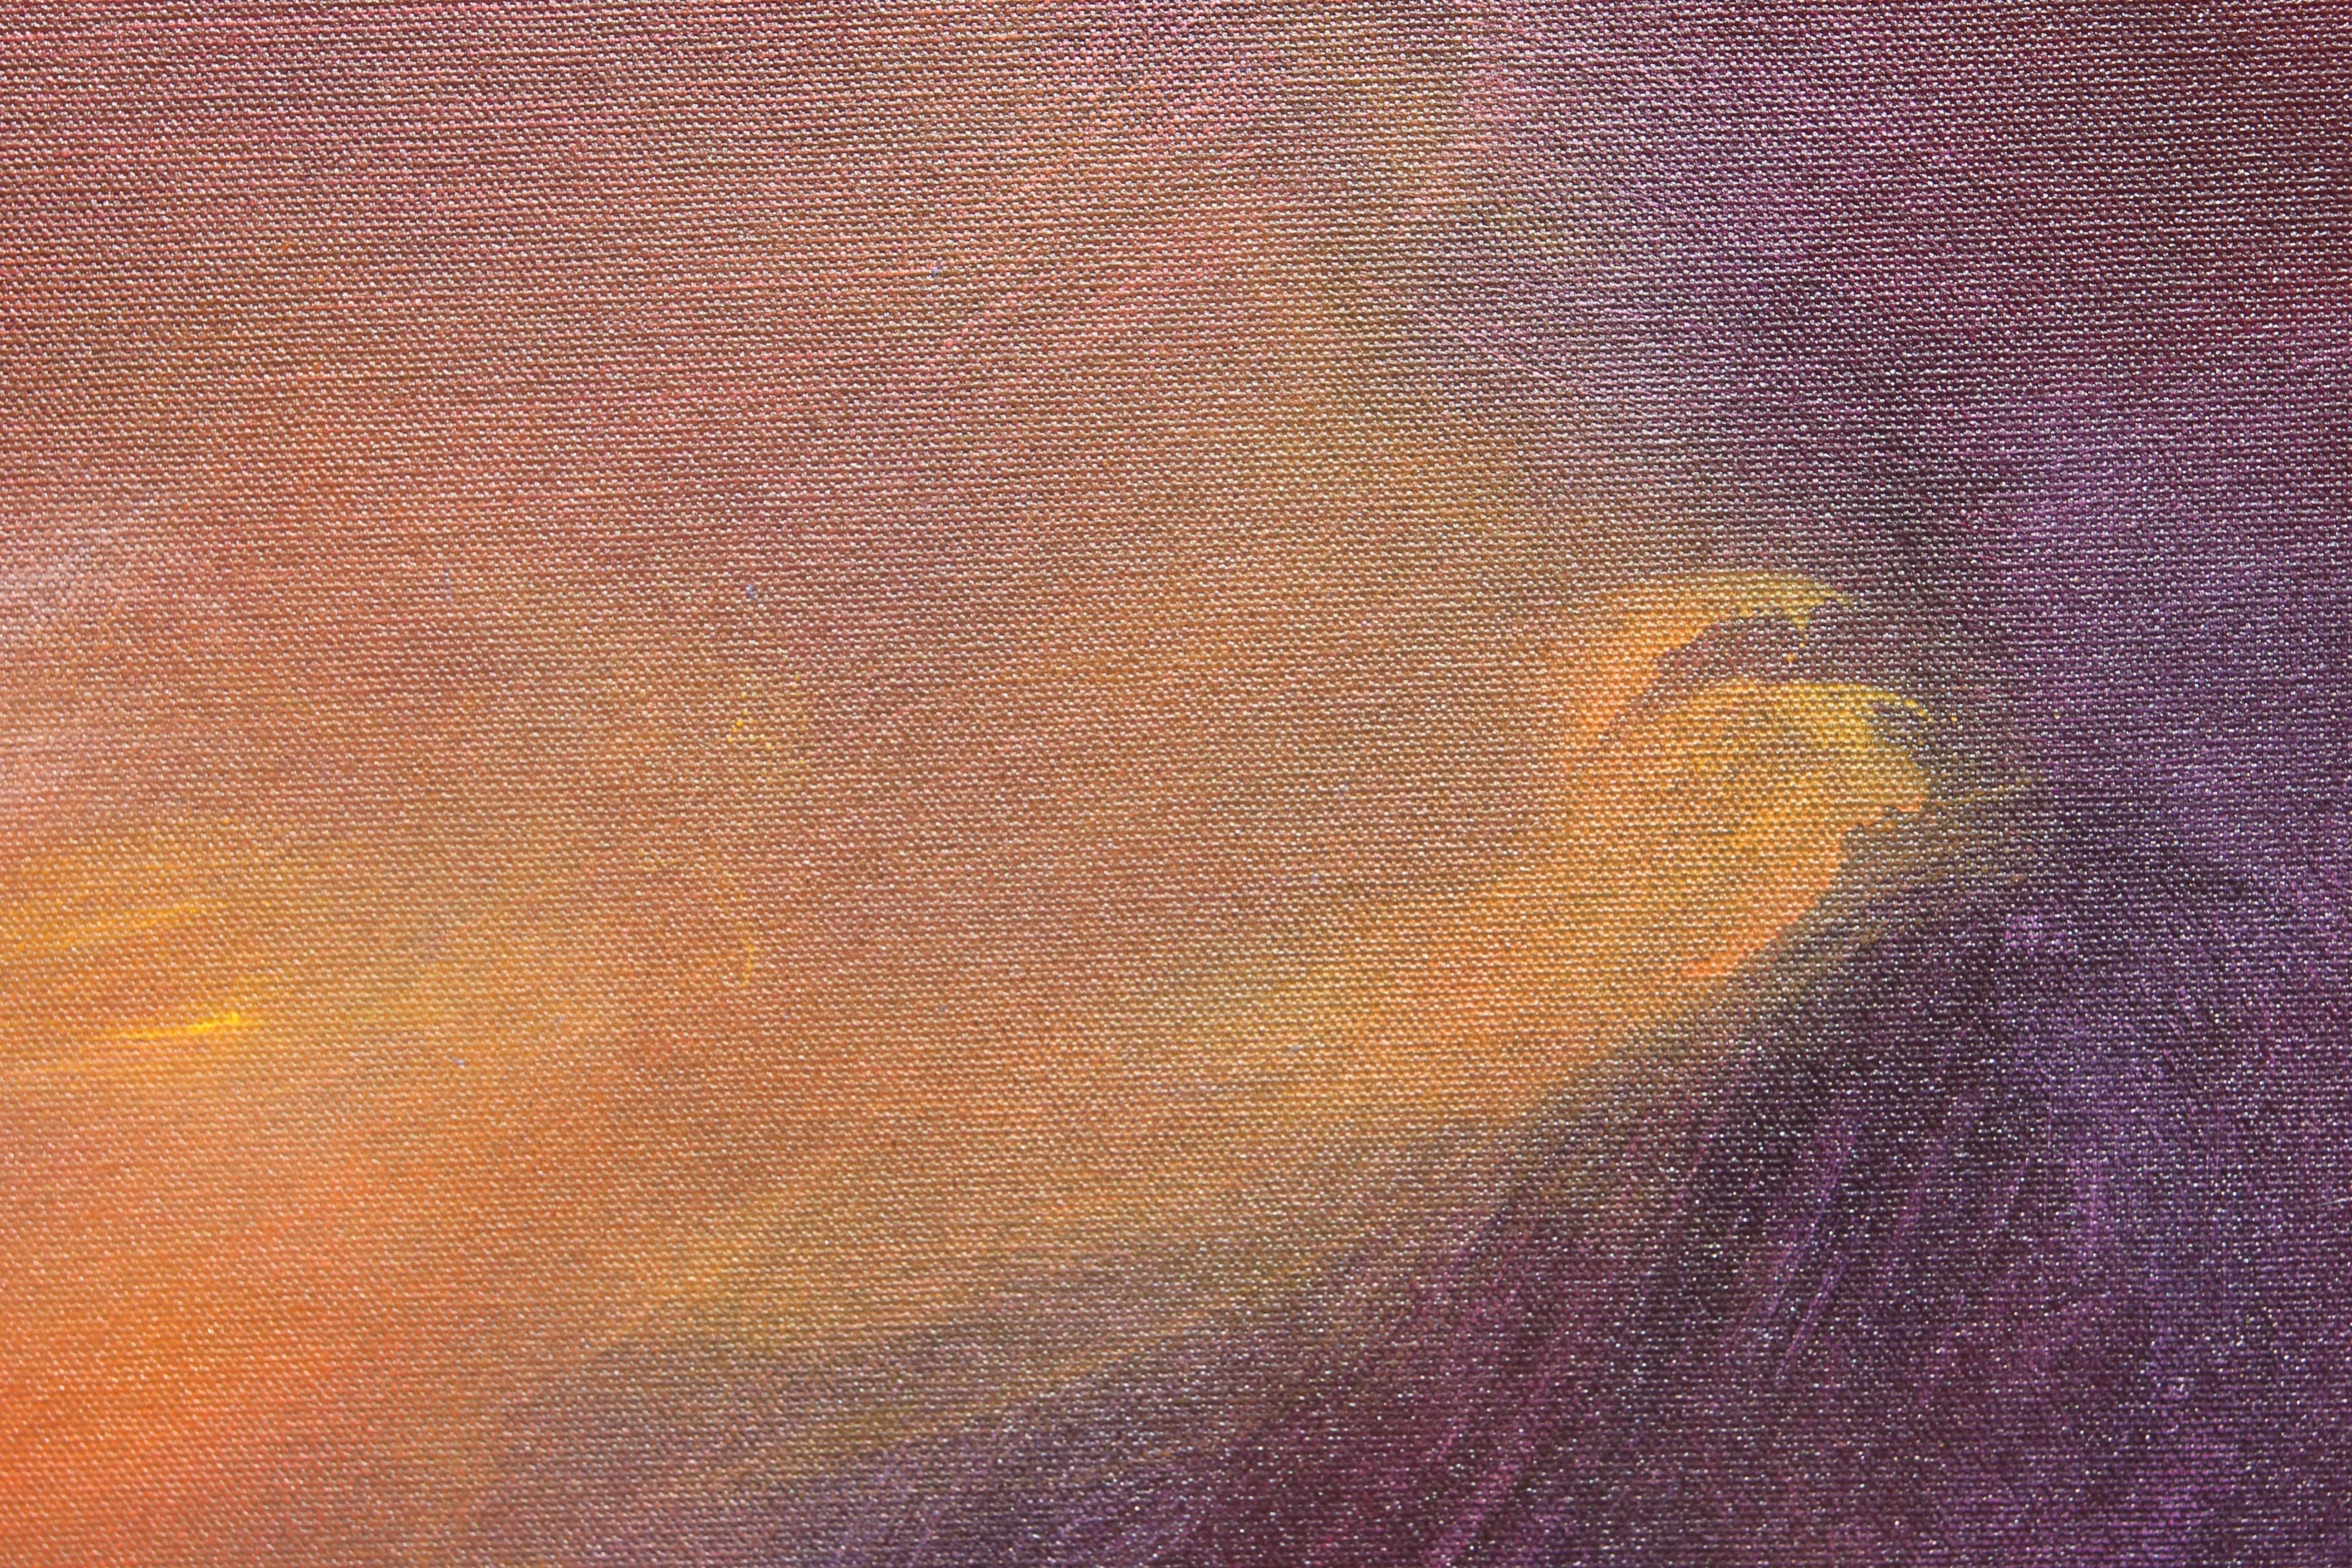 Großes abstraktes expressionistisches Gemälde, das von Mark Rothko beeinflusst ist und aus Rot-, Orange- und Blautönen besteht. Die Leinwand ist vom Künstler signiert, betitelt und datiert. Die Leinwand ist nicht gerahmt. Dieses Gemälde ist Teil der